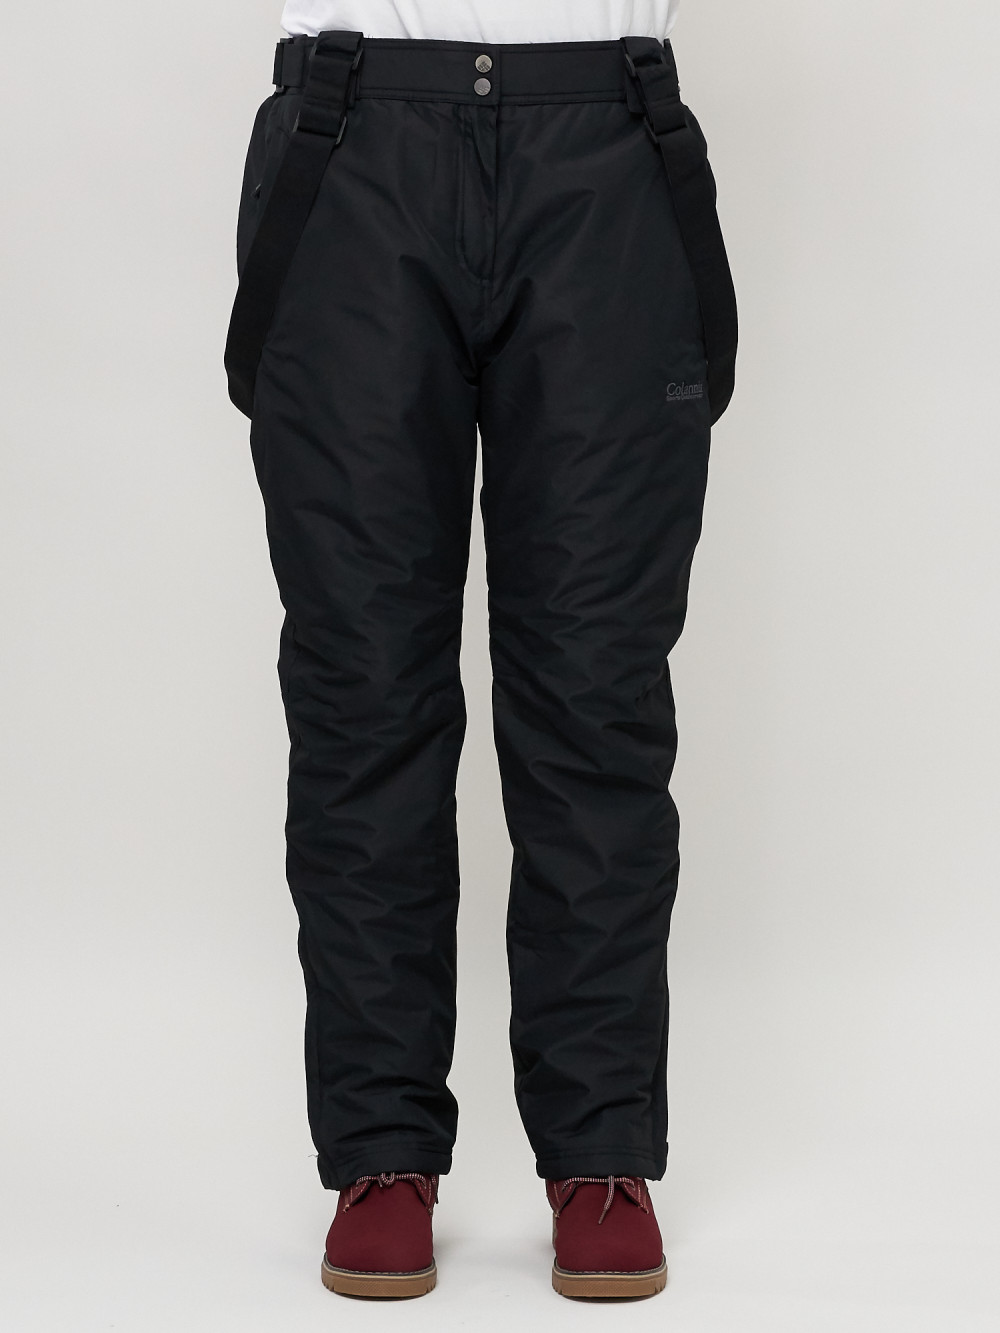 Купить оптом Полукомбинезон брюки горнолыжные женские big size черного цвета 66413Ch в Екатеринбурге